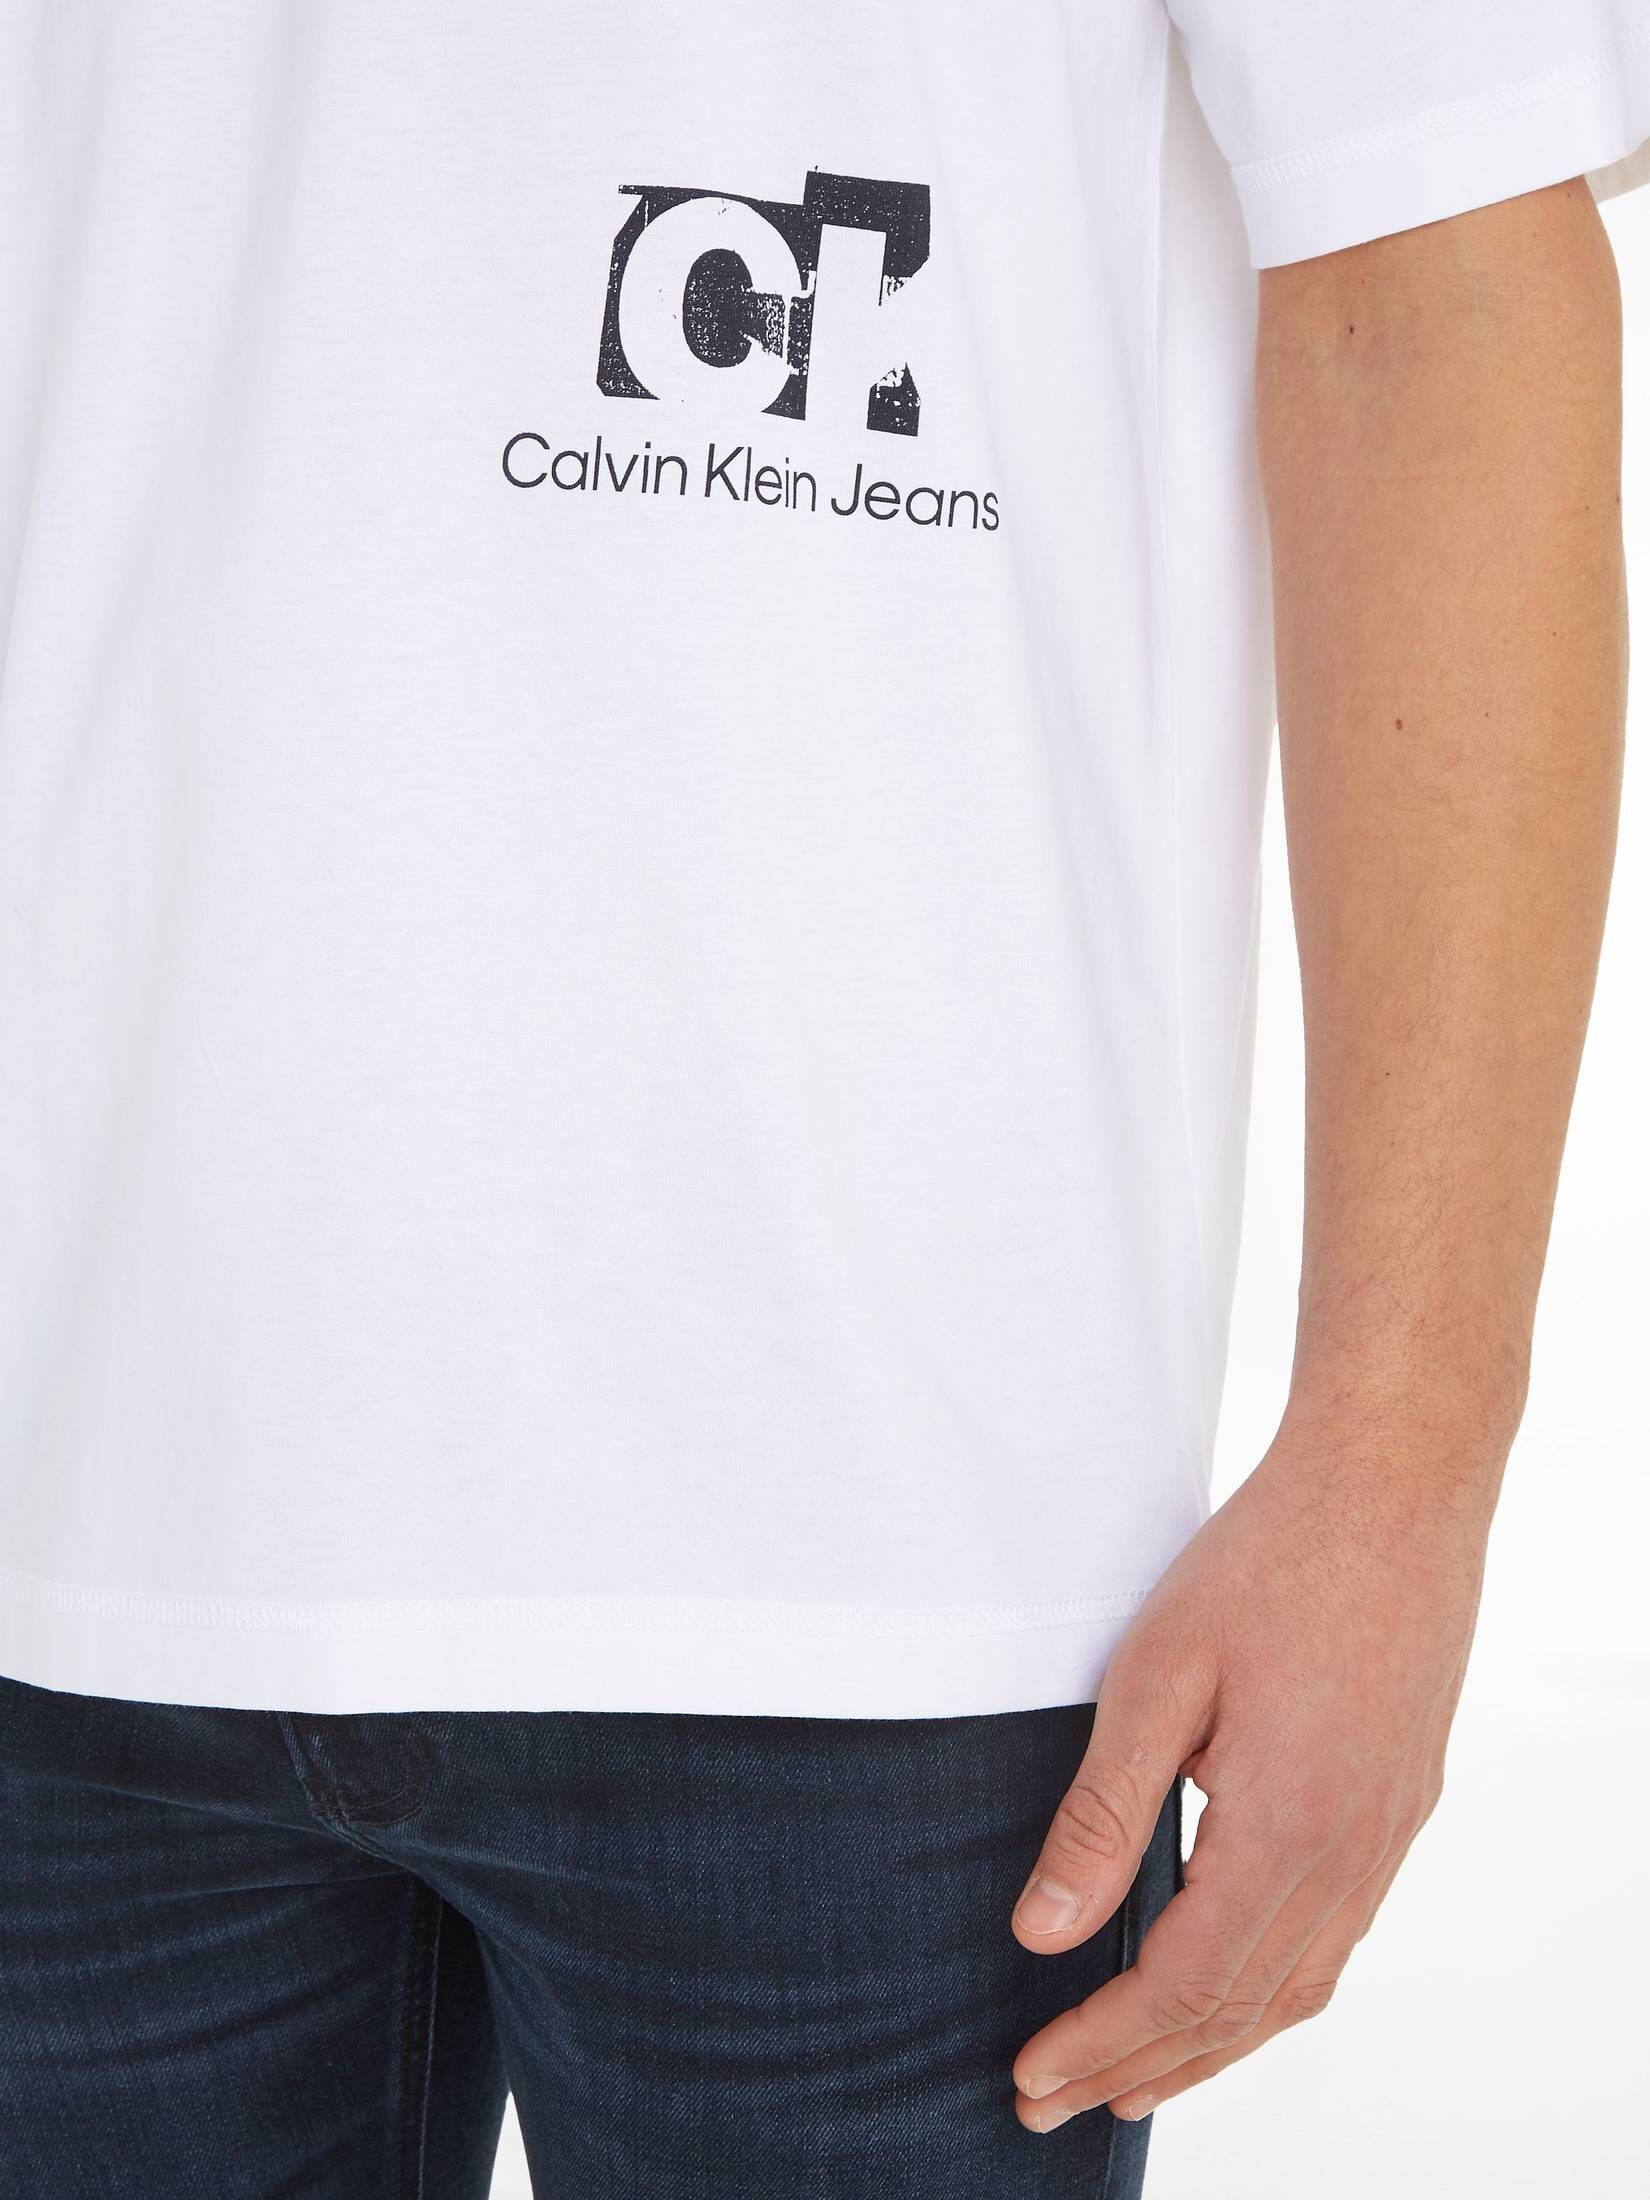 CALVIN KLEIN JEANS Herren T-Shirt CONNECTED LAYER LANDSCAPE TEE mit Bio- Baumwolle Oversized Fit kaufen | engelhorn